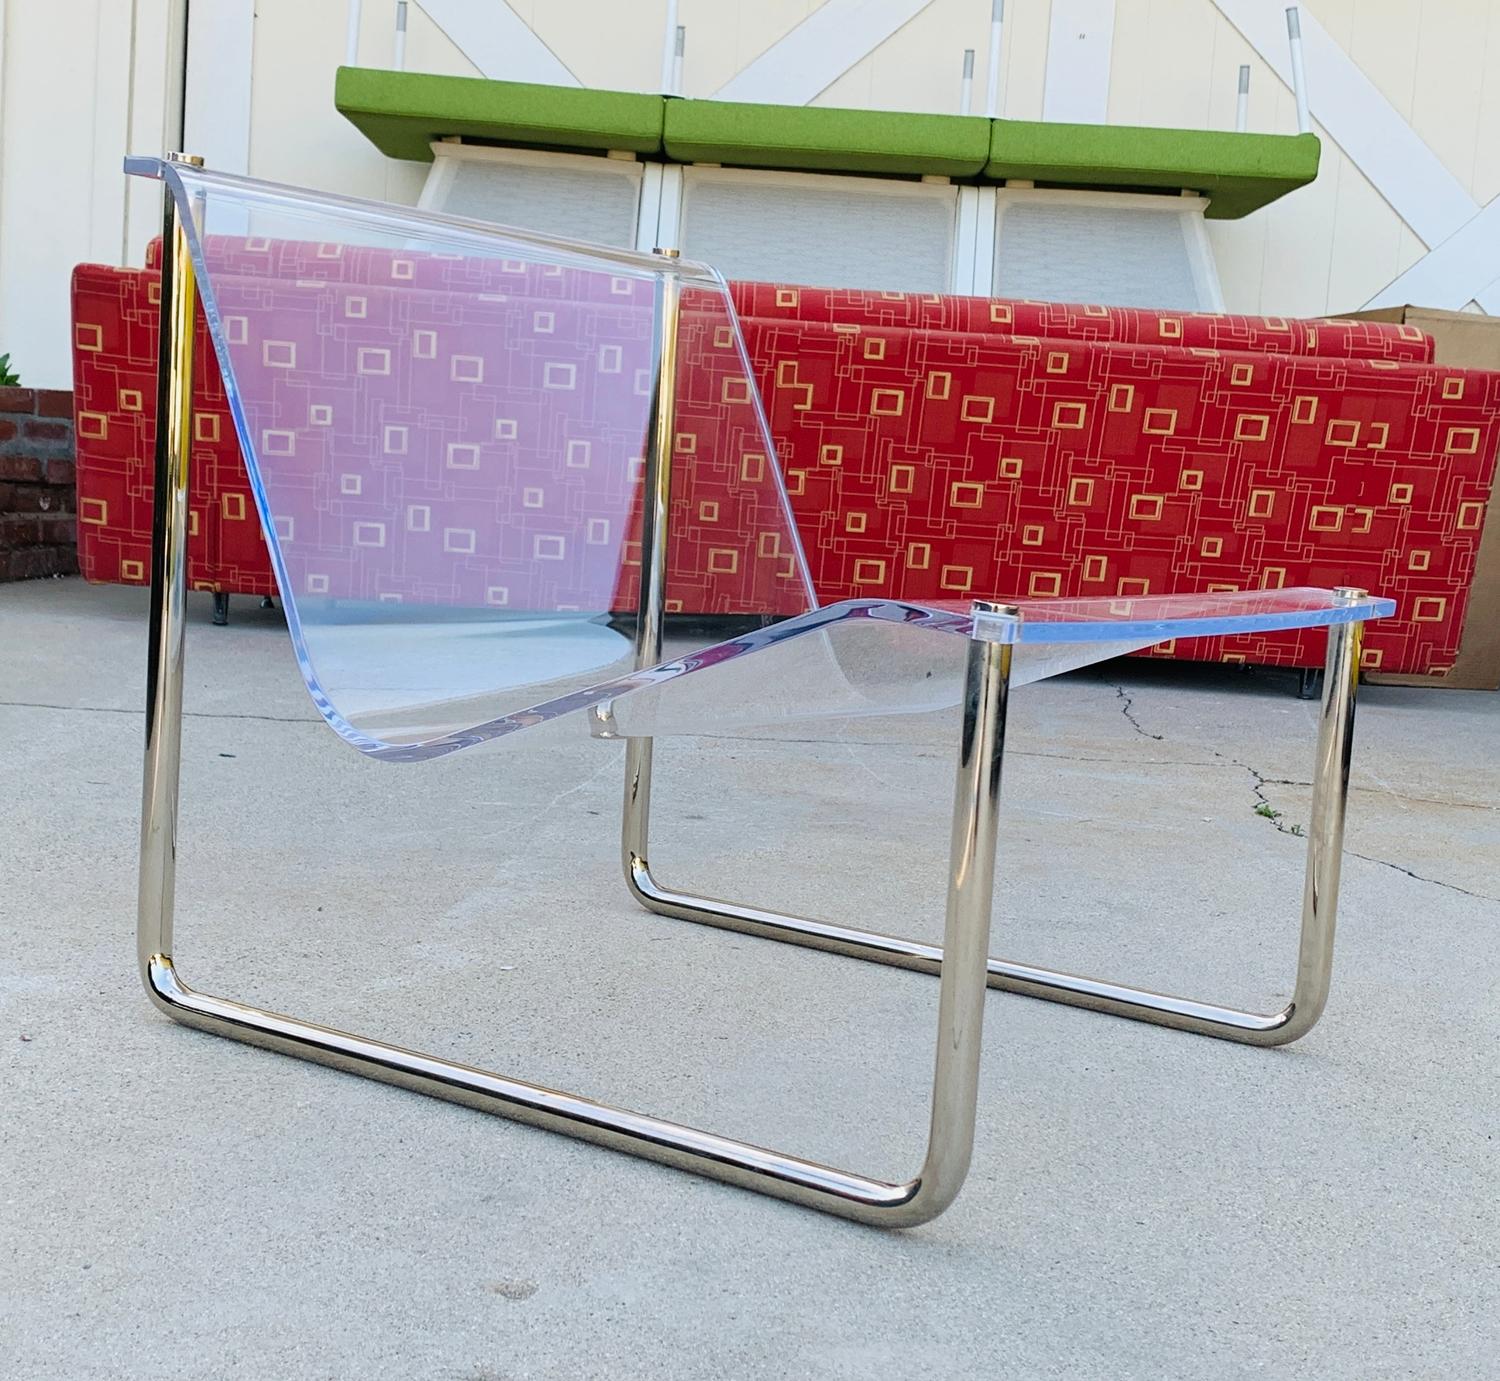 Voici la chaise Charles Hollis Jones Sling Chair, signée et datée, USA 1969 - une pièce extraordinaire du design du milieu du siècle qui allie sans effort forme et fonctionnalité. 

Cette chaise emblématique témoigne du savoir-faire visionnaire de